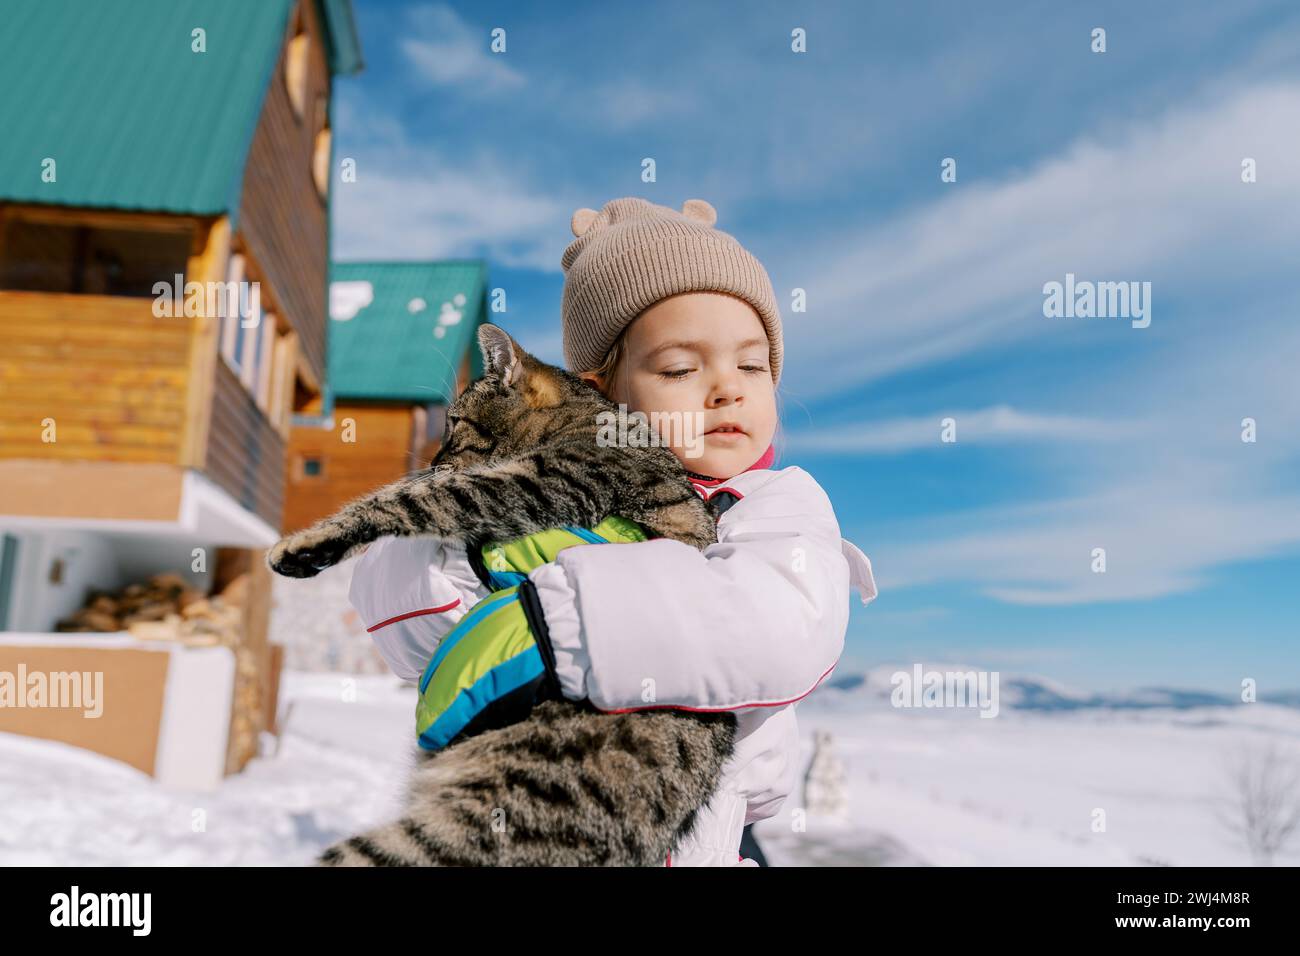 La niña abraza a un gato tabby mientras está de pie en la nieve cerca de una cabaña de madera Foto de stock